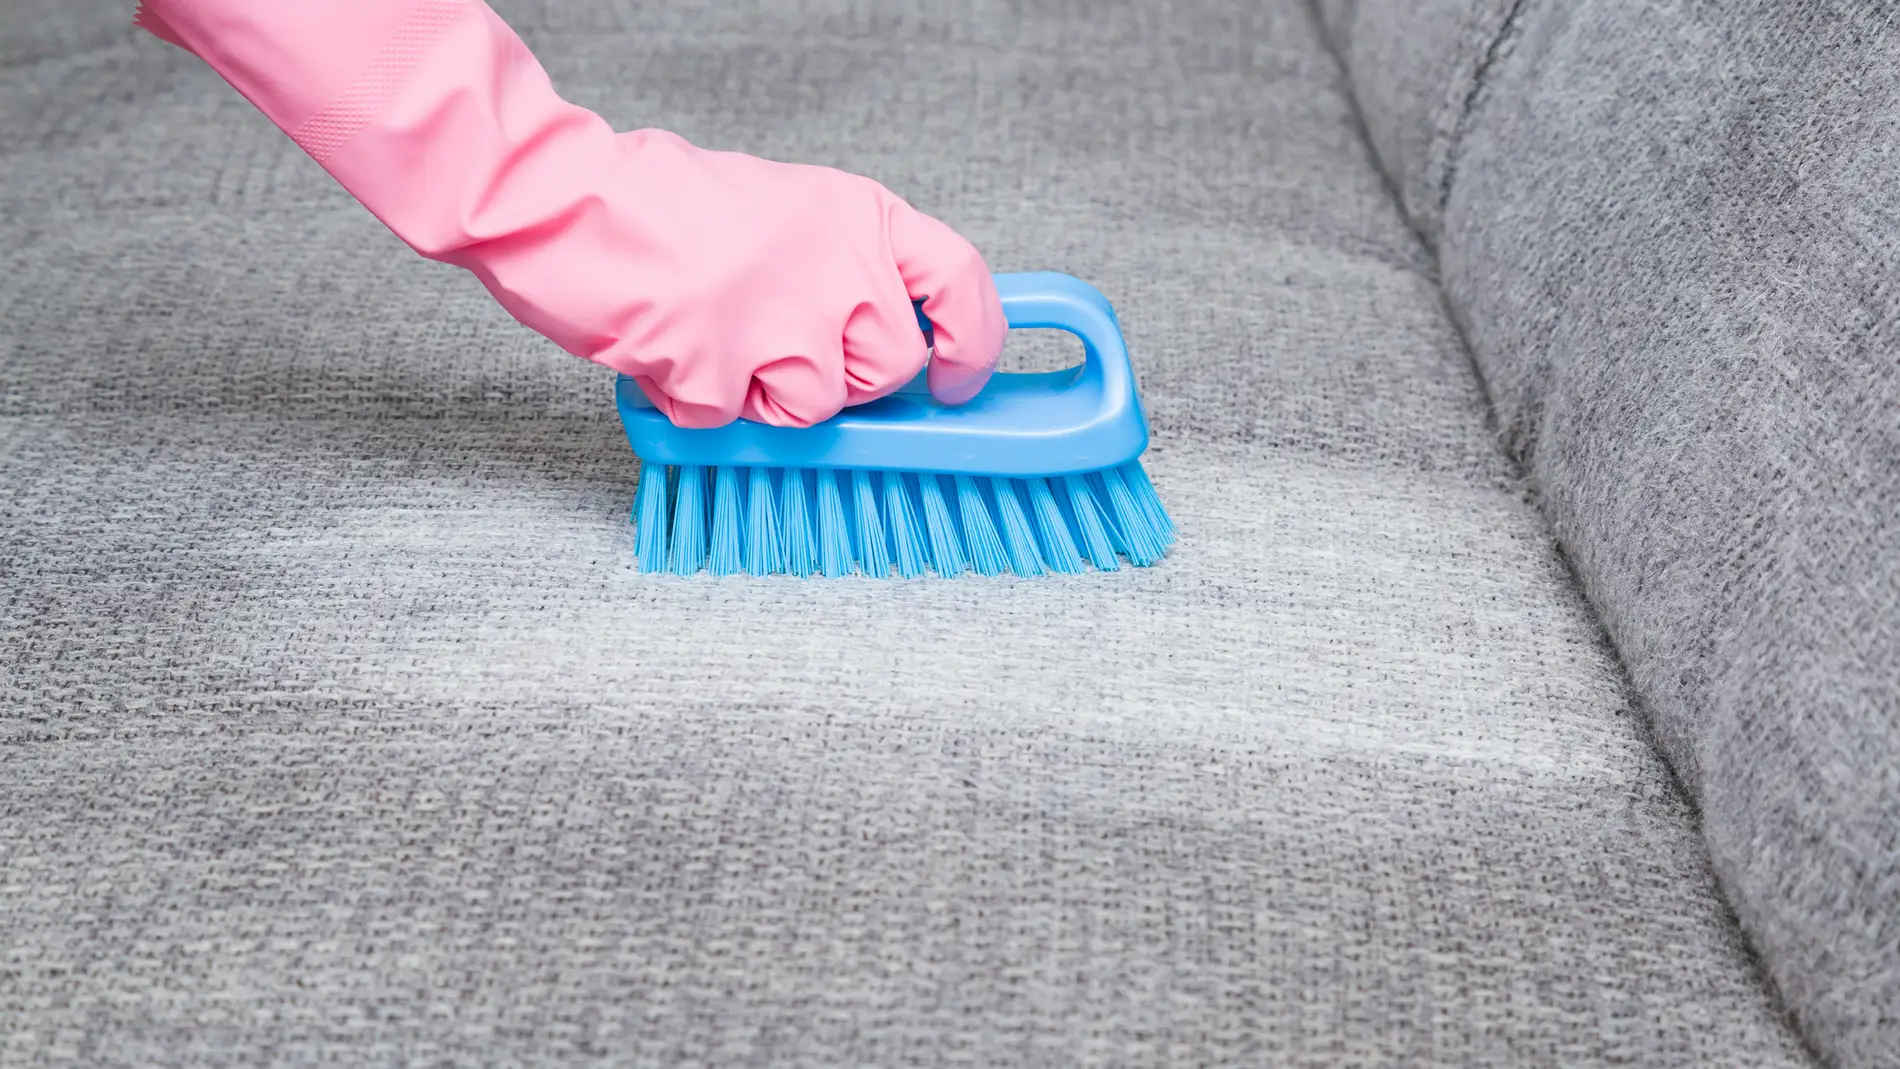 Trucos caseros infalibles para limpiar la tapicería de los muebles